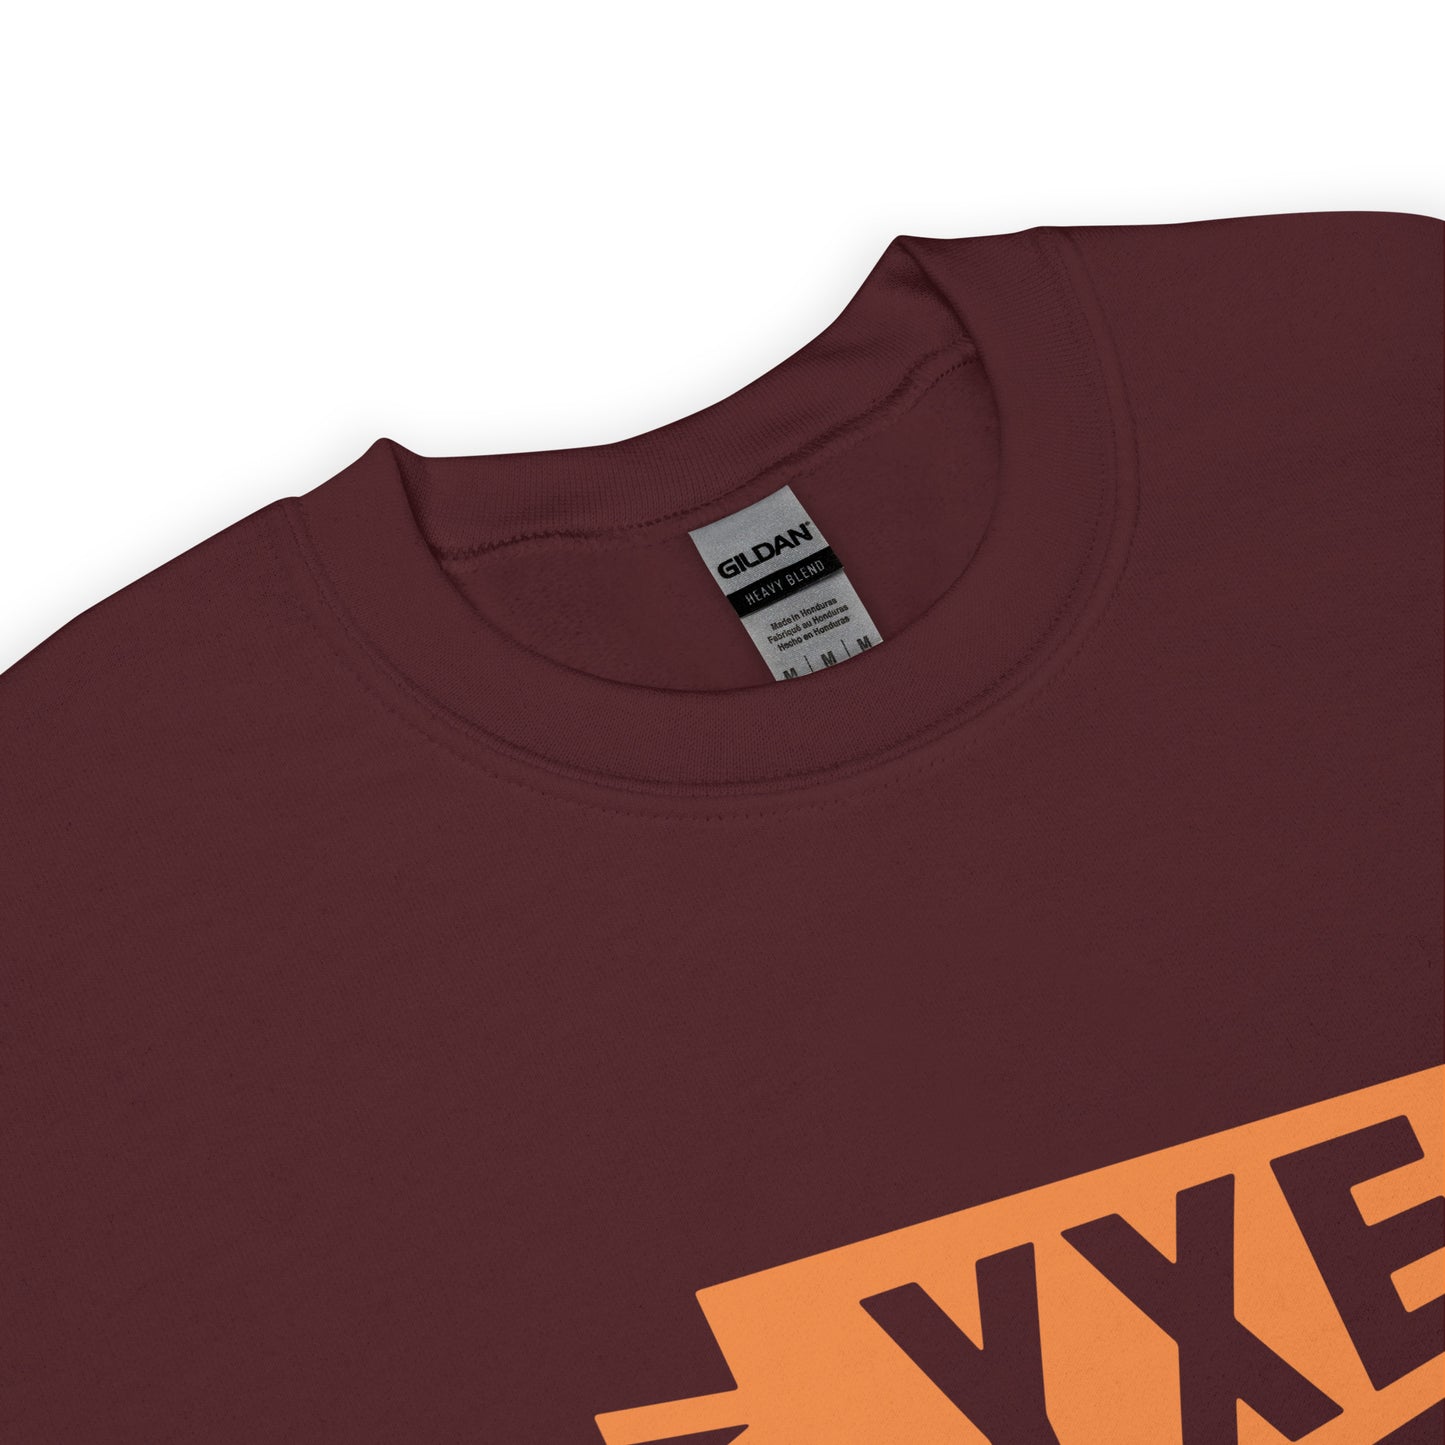 Airport Code Sweatshirt - Orange Graphic • YXE Saskatoon • YHM Designs - Image 04